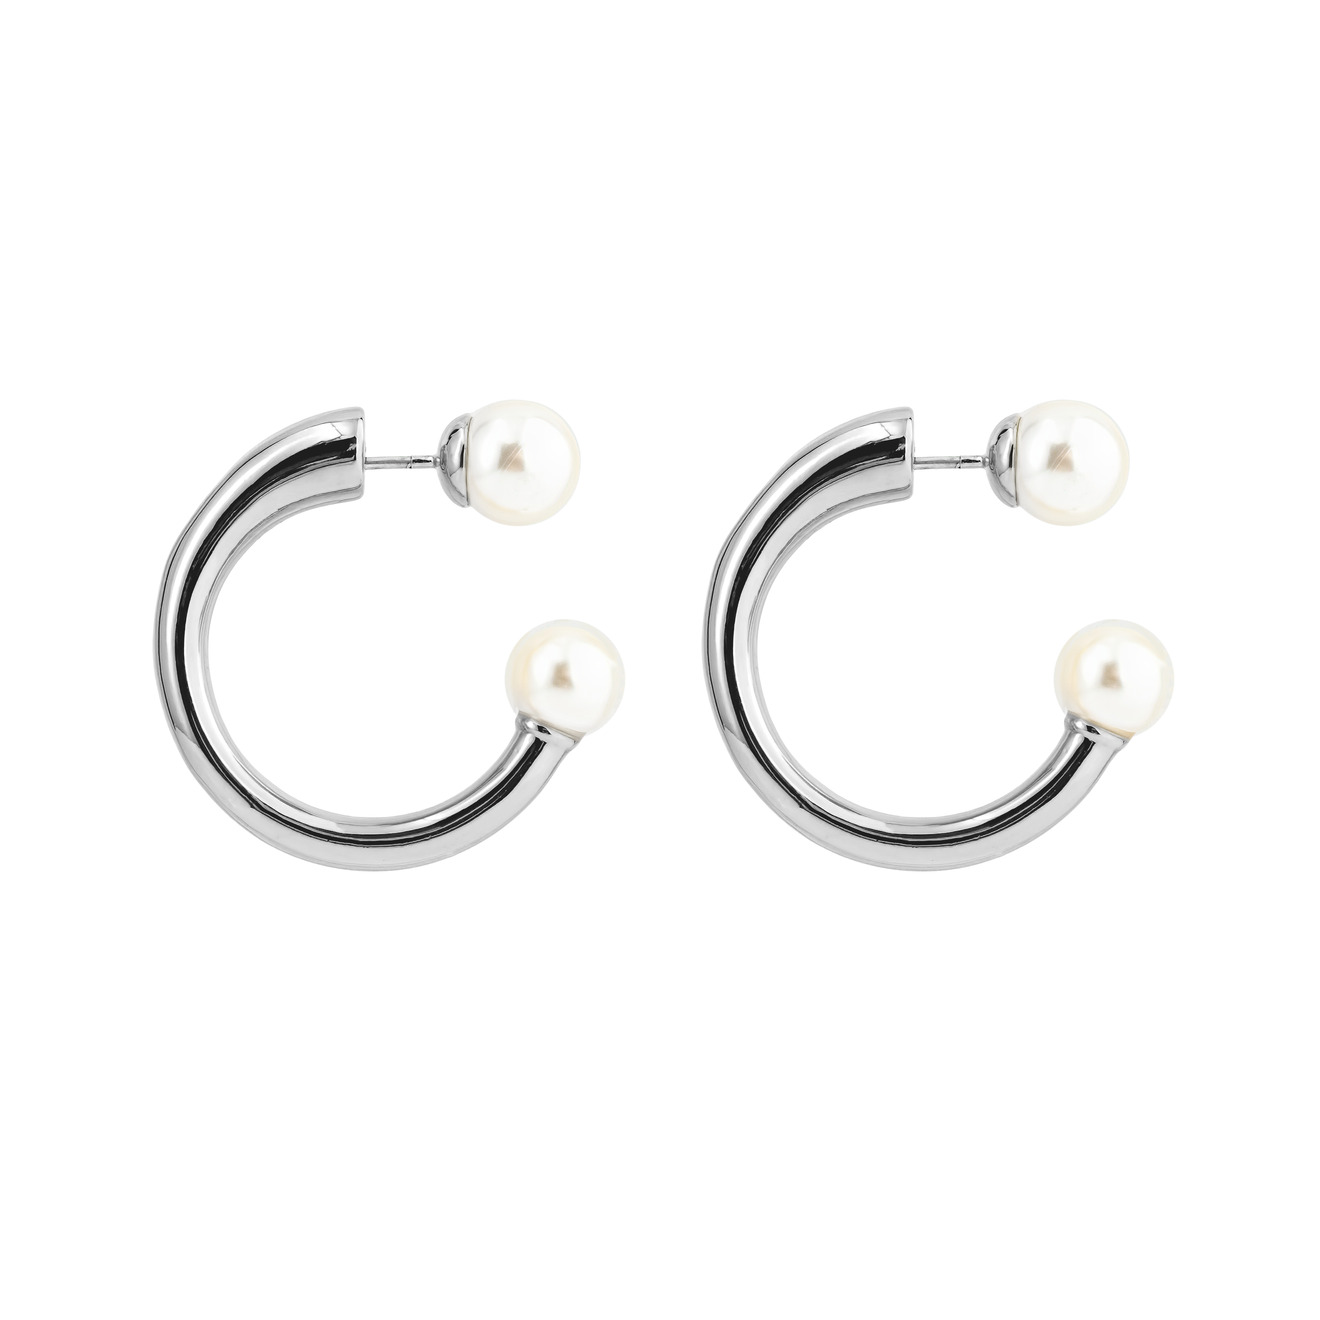 Aqua Серебристые круглые серьги-джекеты с белыми бусинами aqua золотистое открытое кольцо с белыми бусинами